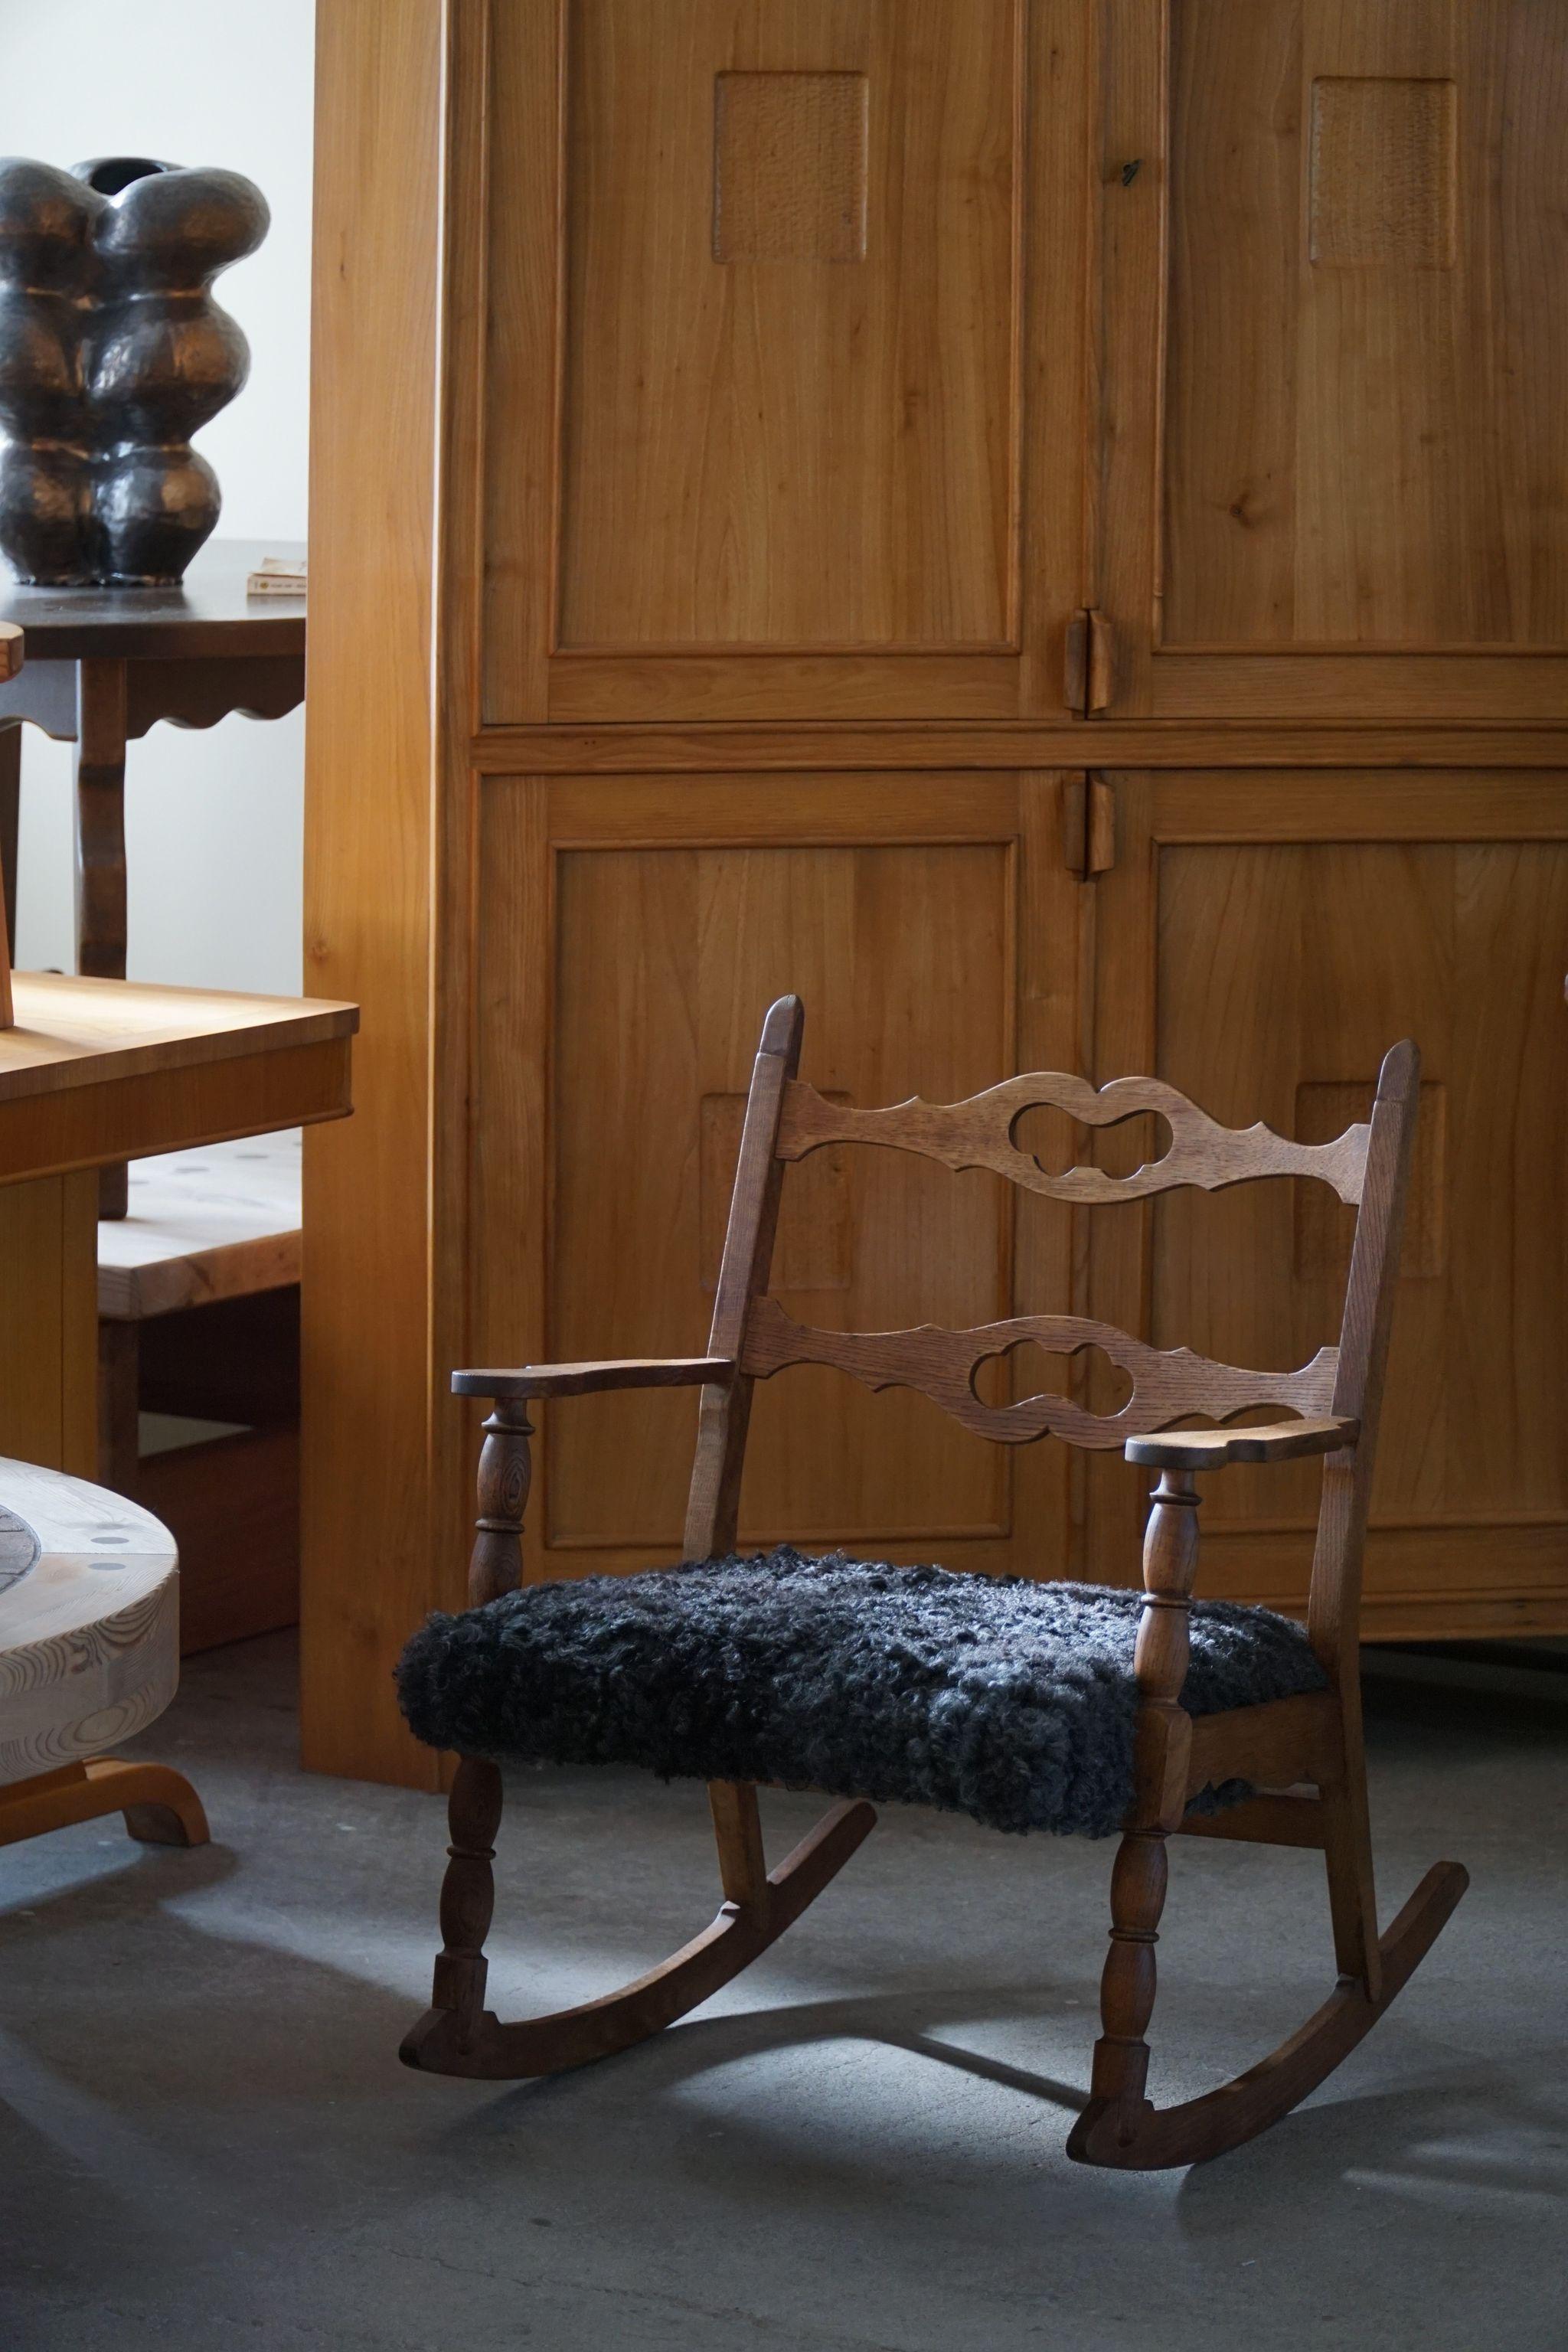 Schöner Schaukelstuhl aus massiver Eiche, Sitz mit Lammfell gepolstert. Entworfen von Henning (Henry) Kjaernulf für EG Kvalitetsmøbel, Dänemark 1960er Jahre.

Dieser schöne Stuhl passt zu vielen Einrichtungsstilen. Ein modernes, klassisches,